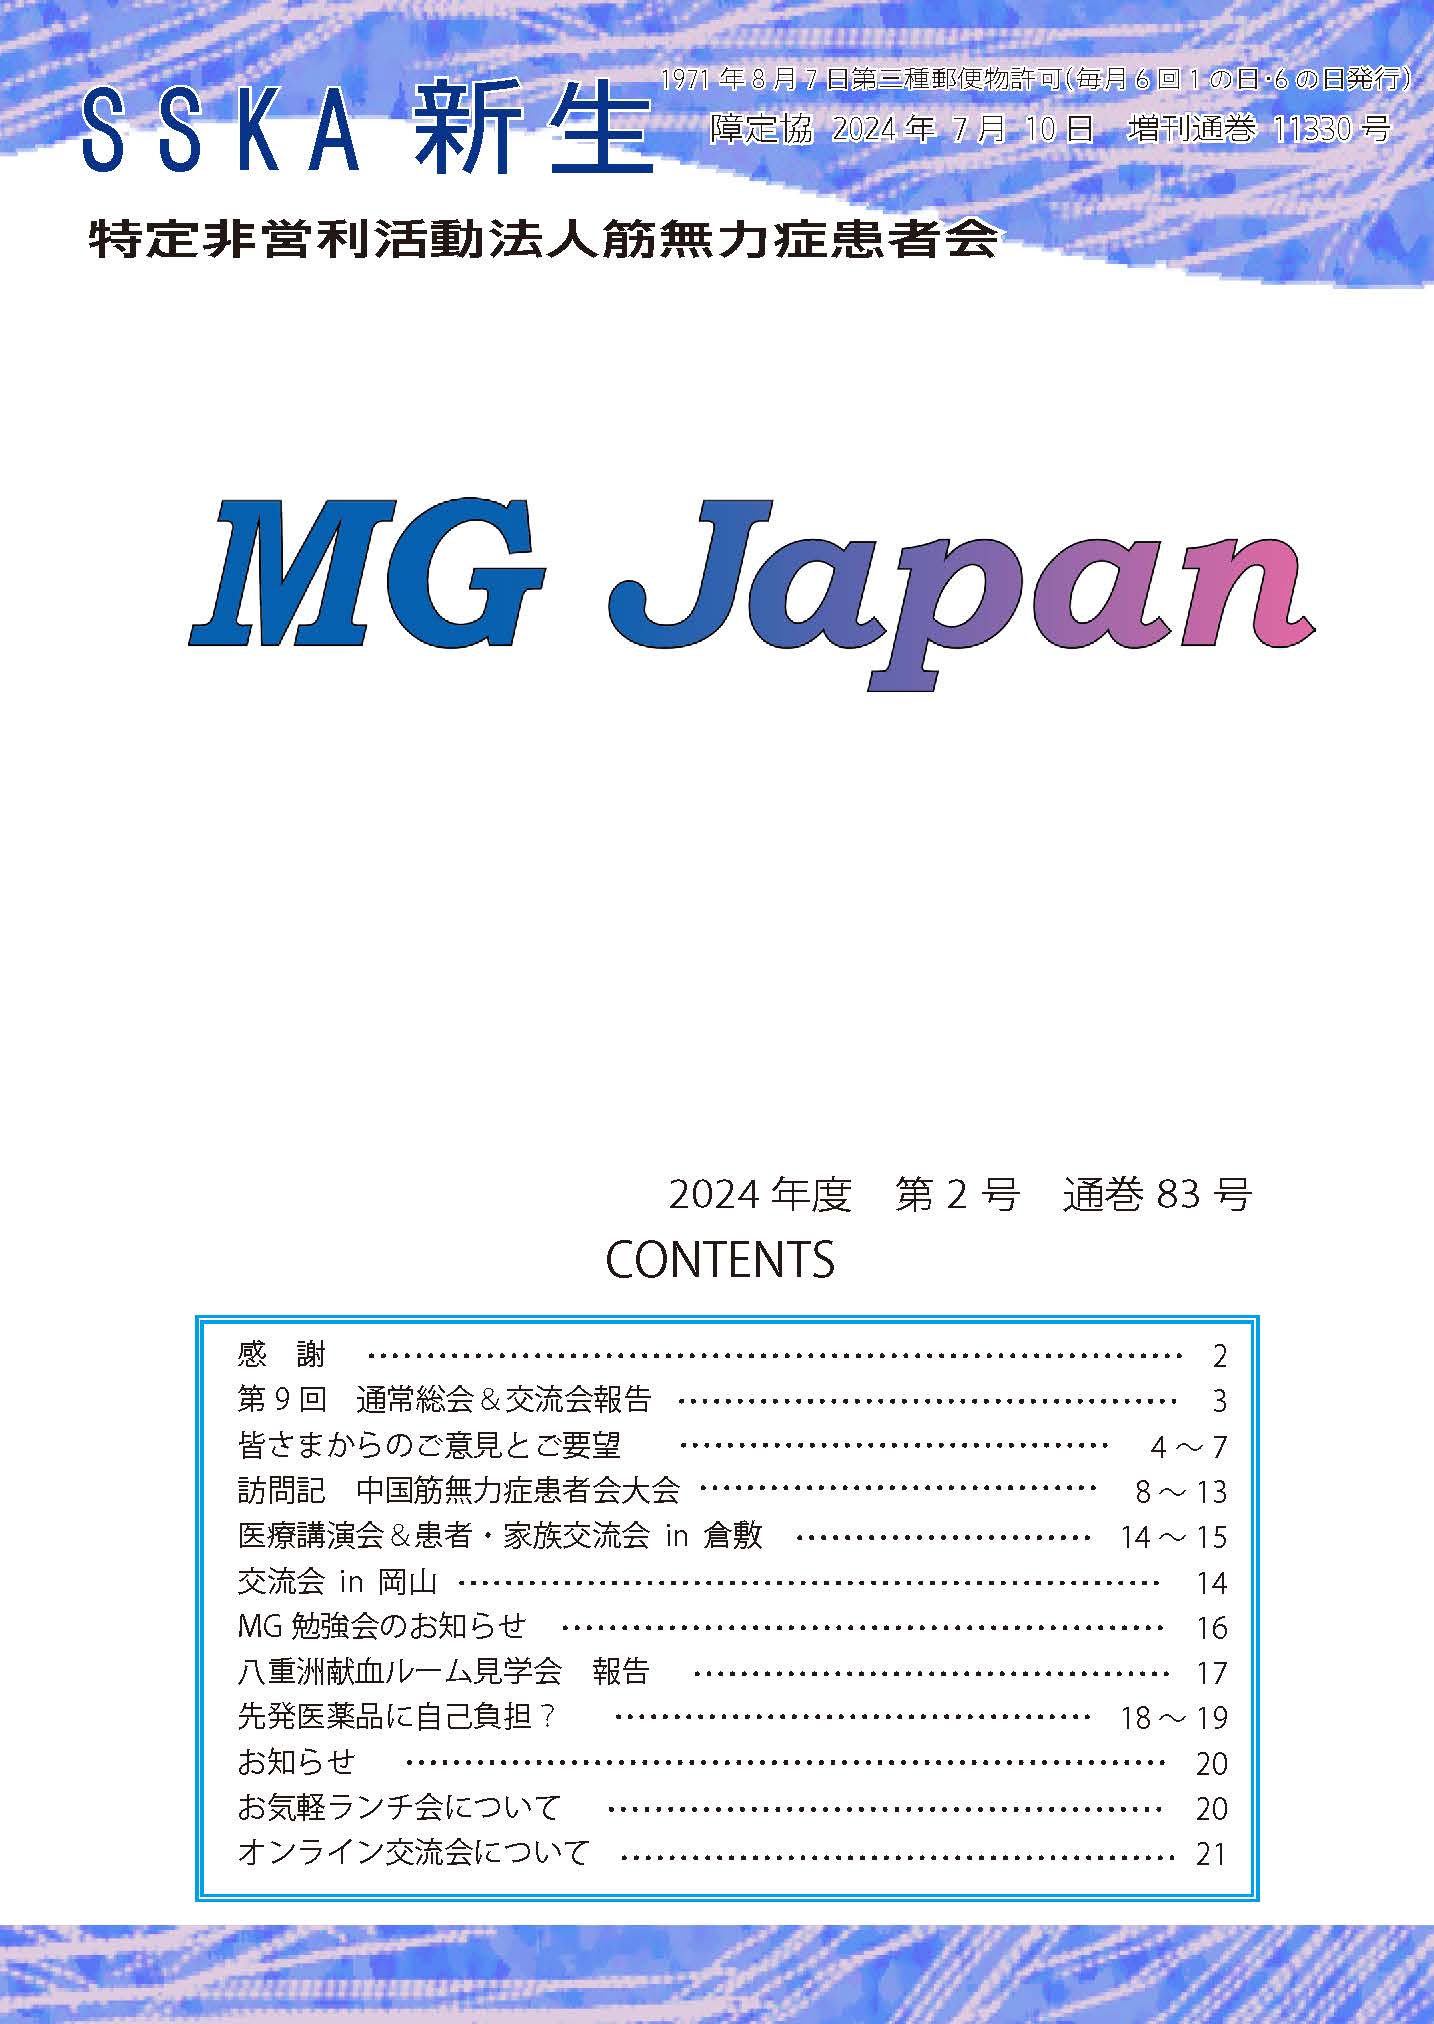 会報「MG Japan83号」